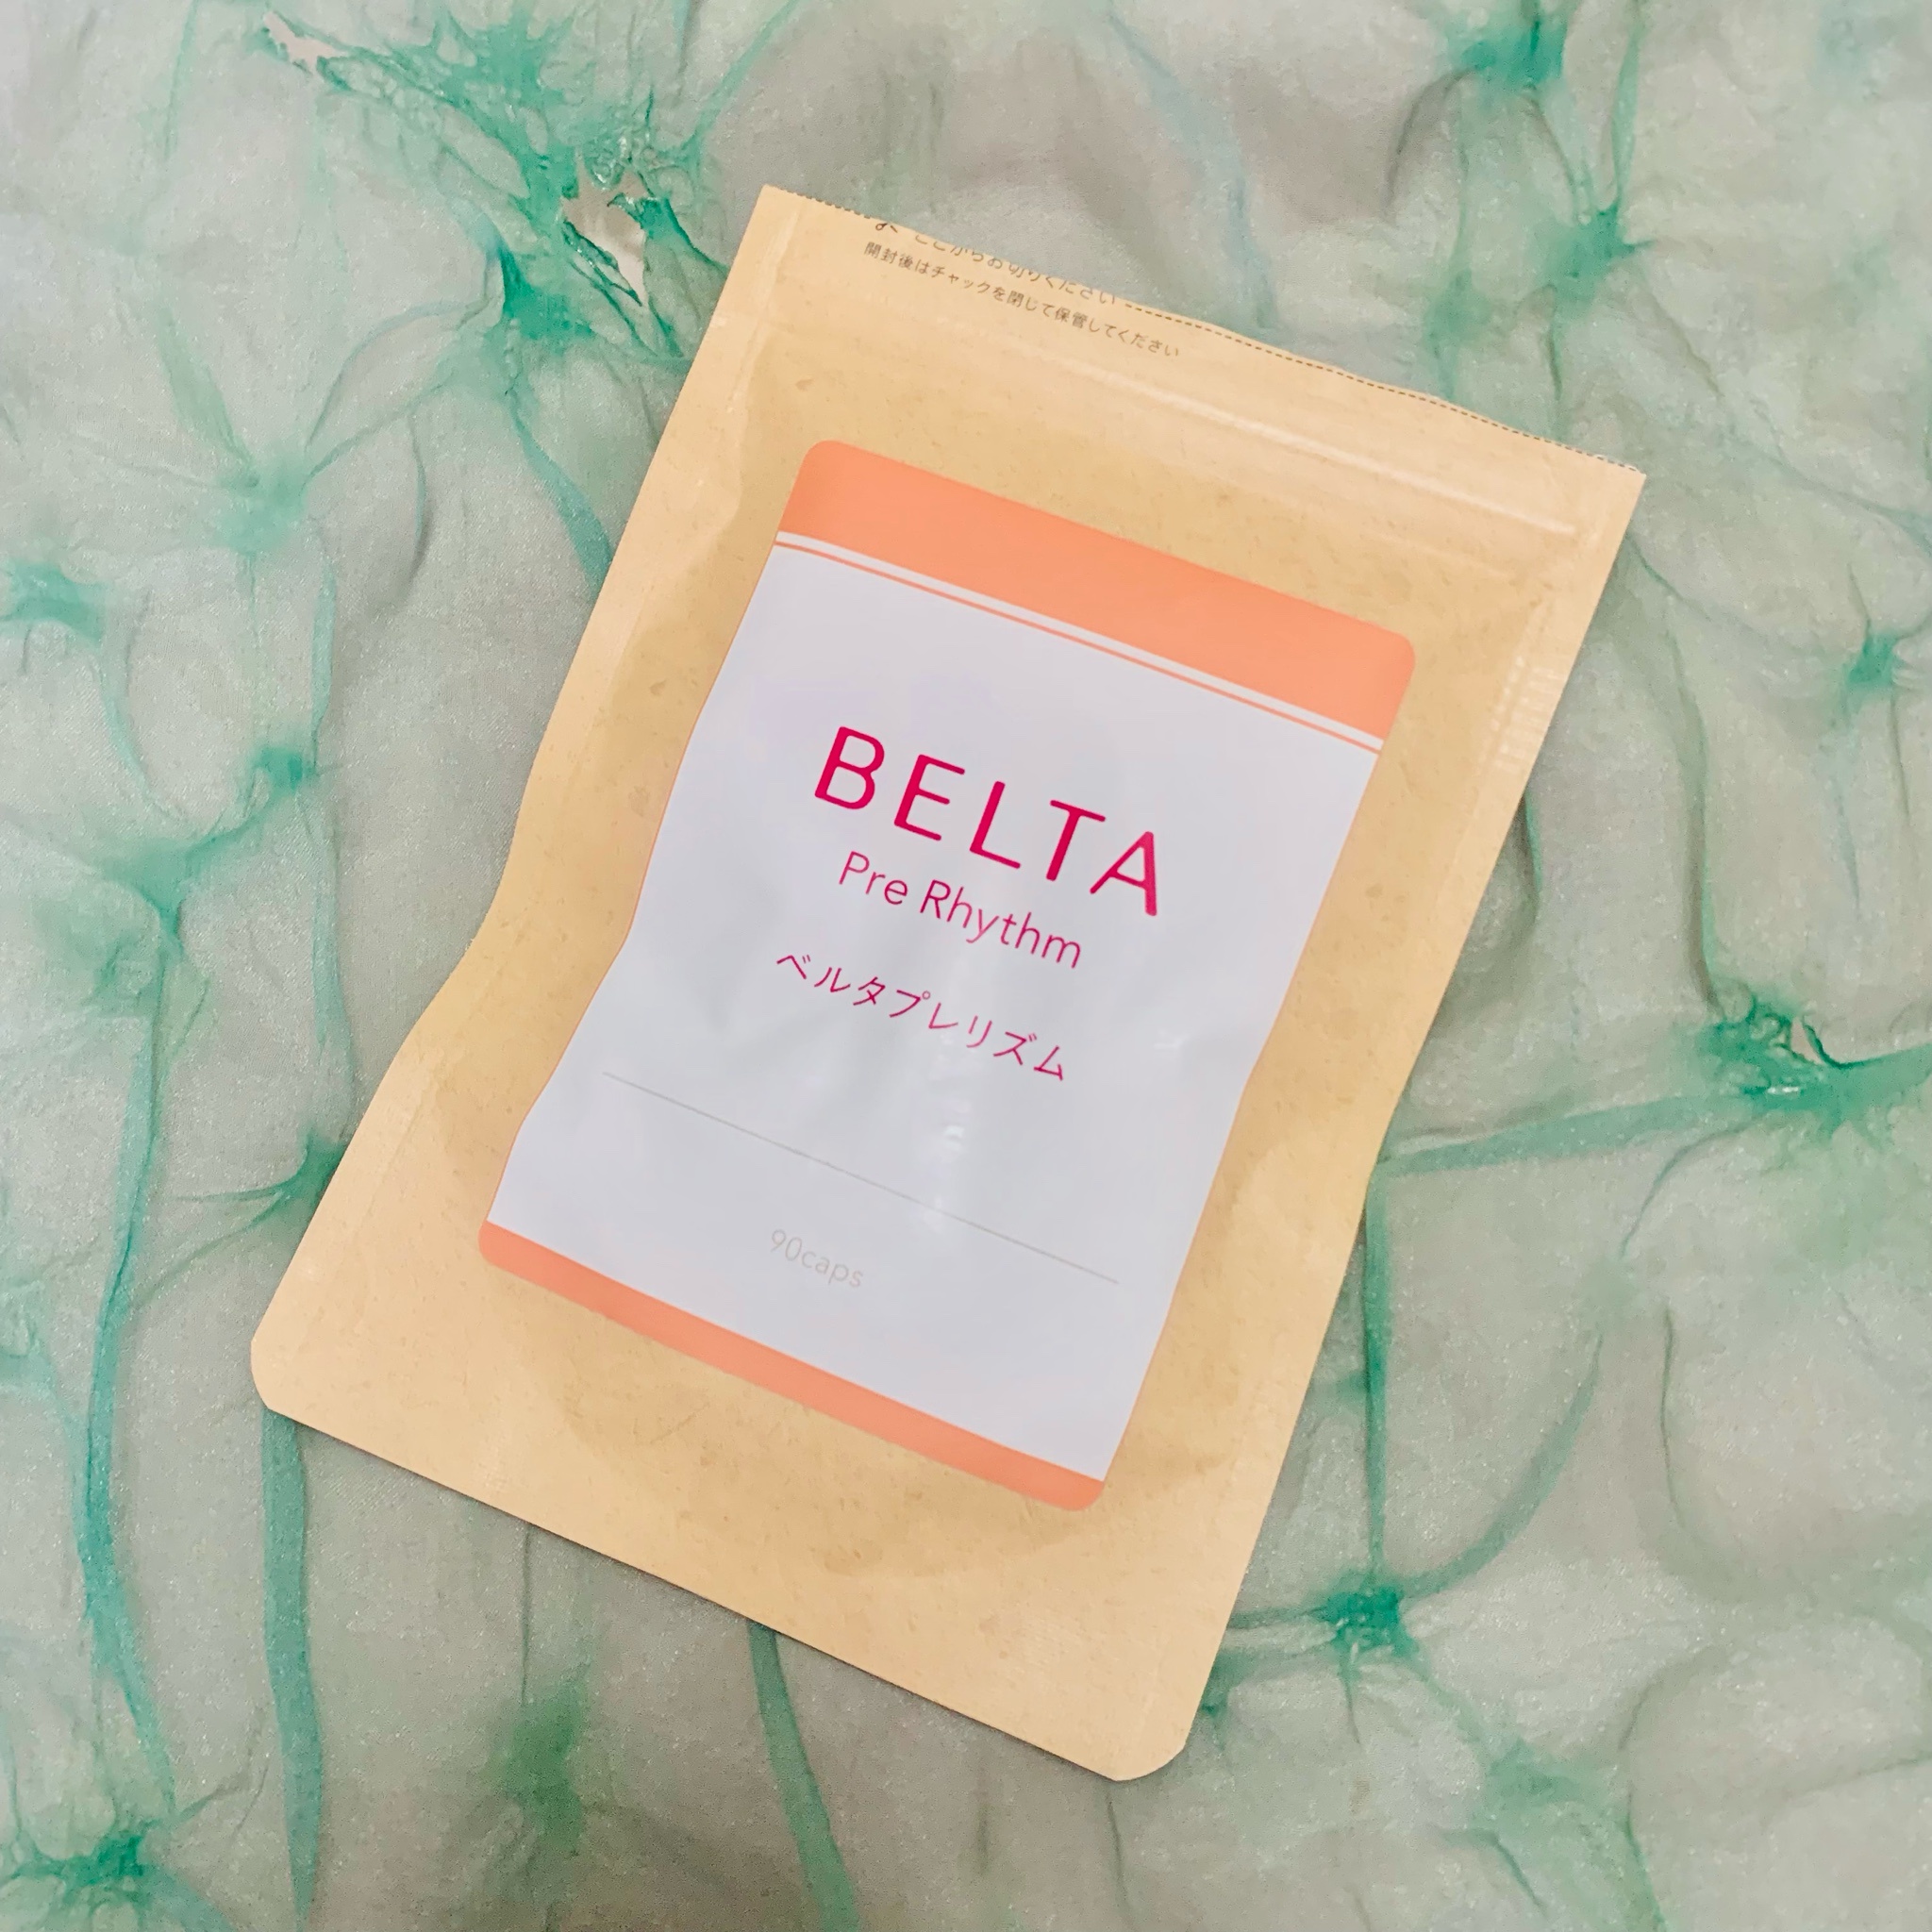 BELTA(ベルタ) / ベルタプレリズムの公式商品情報｜美容・化粧品情報は